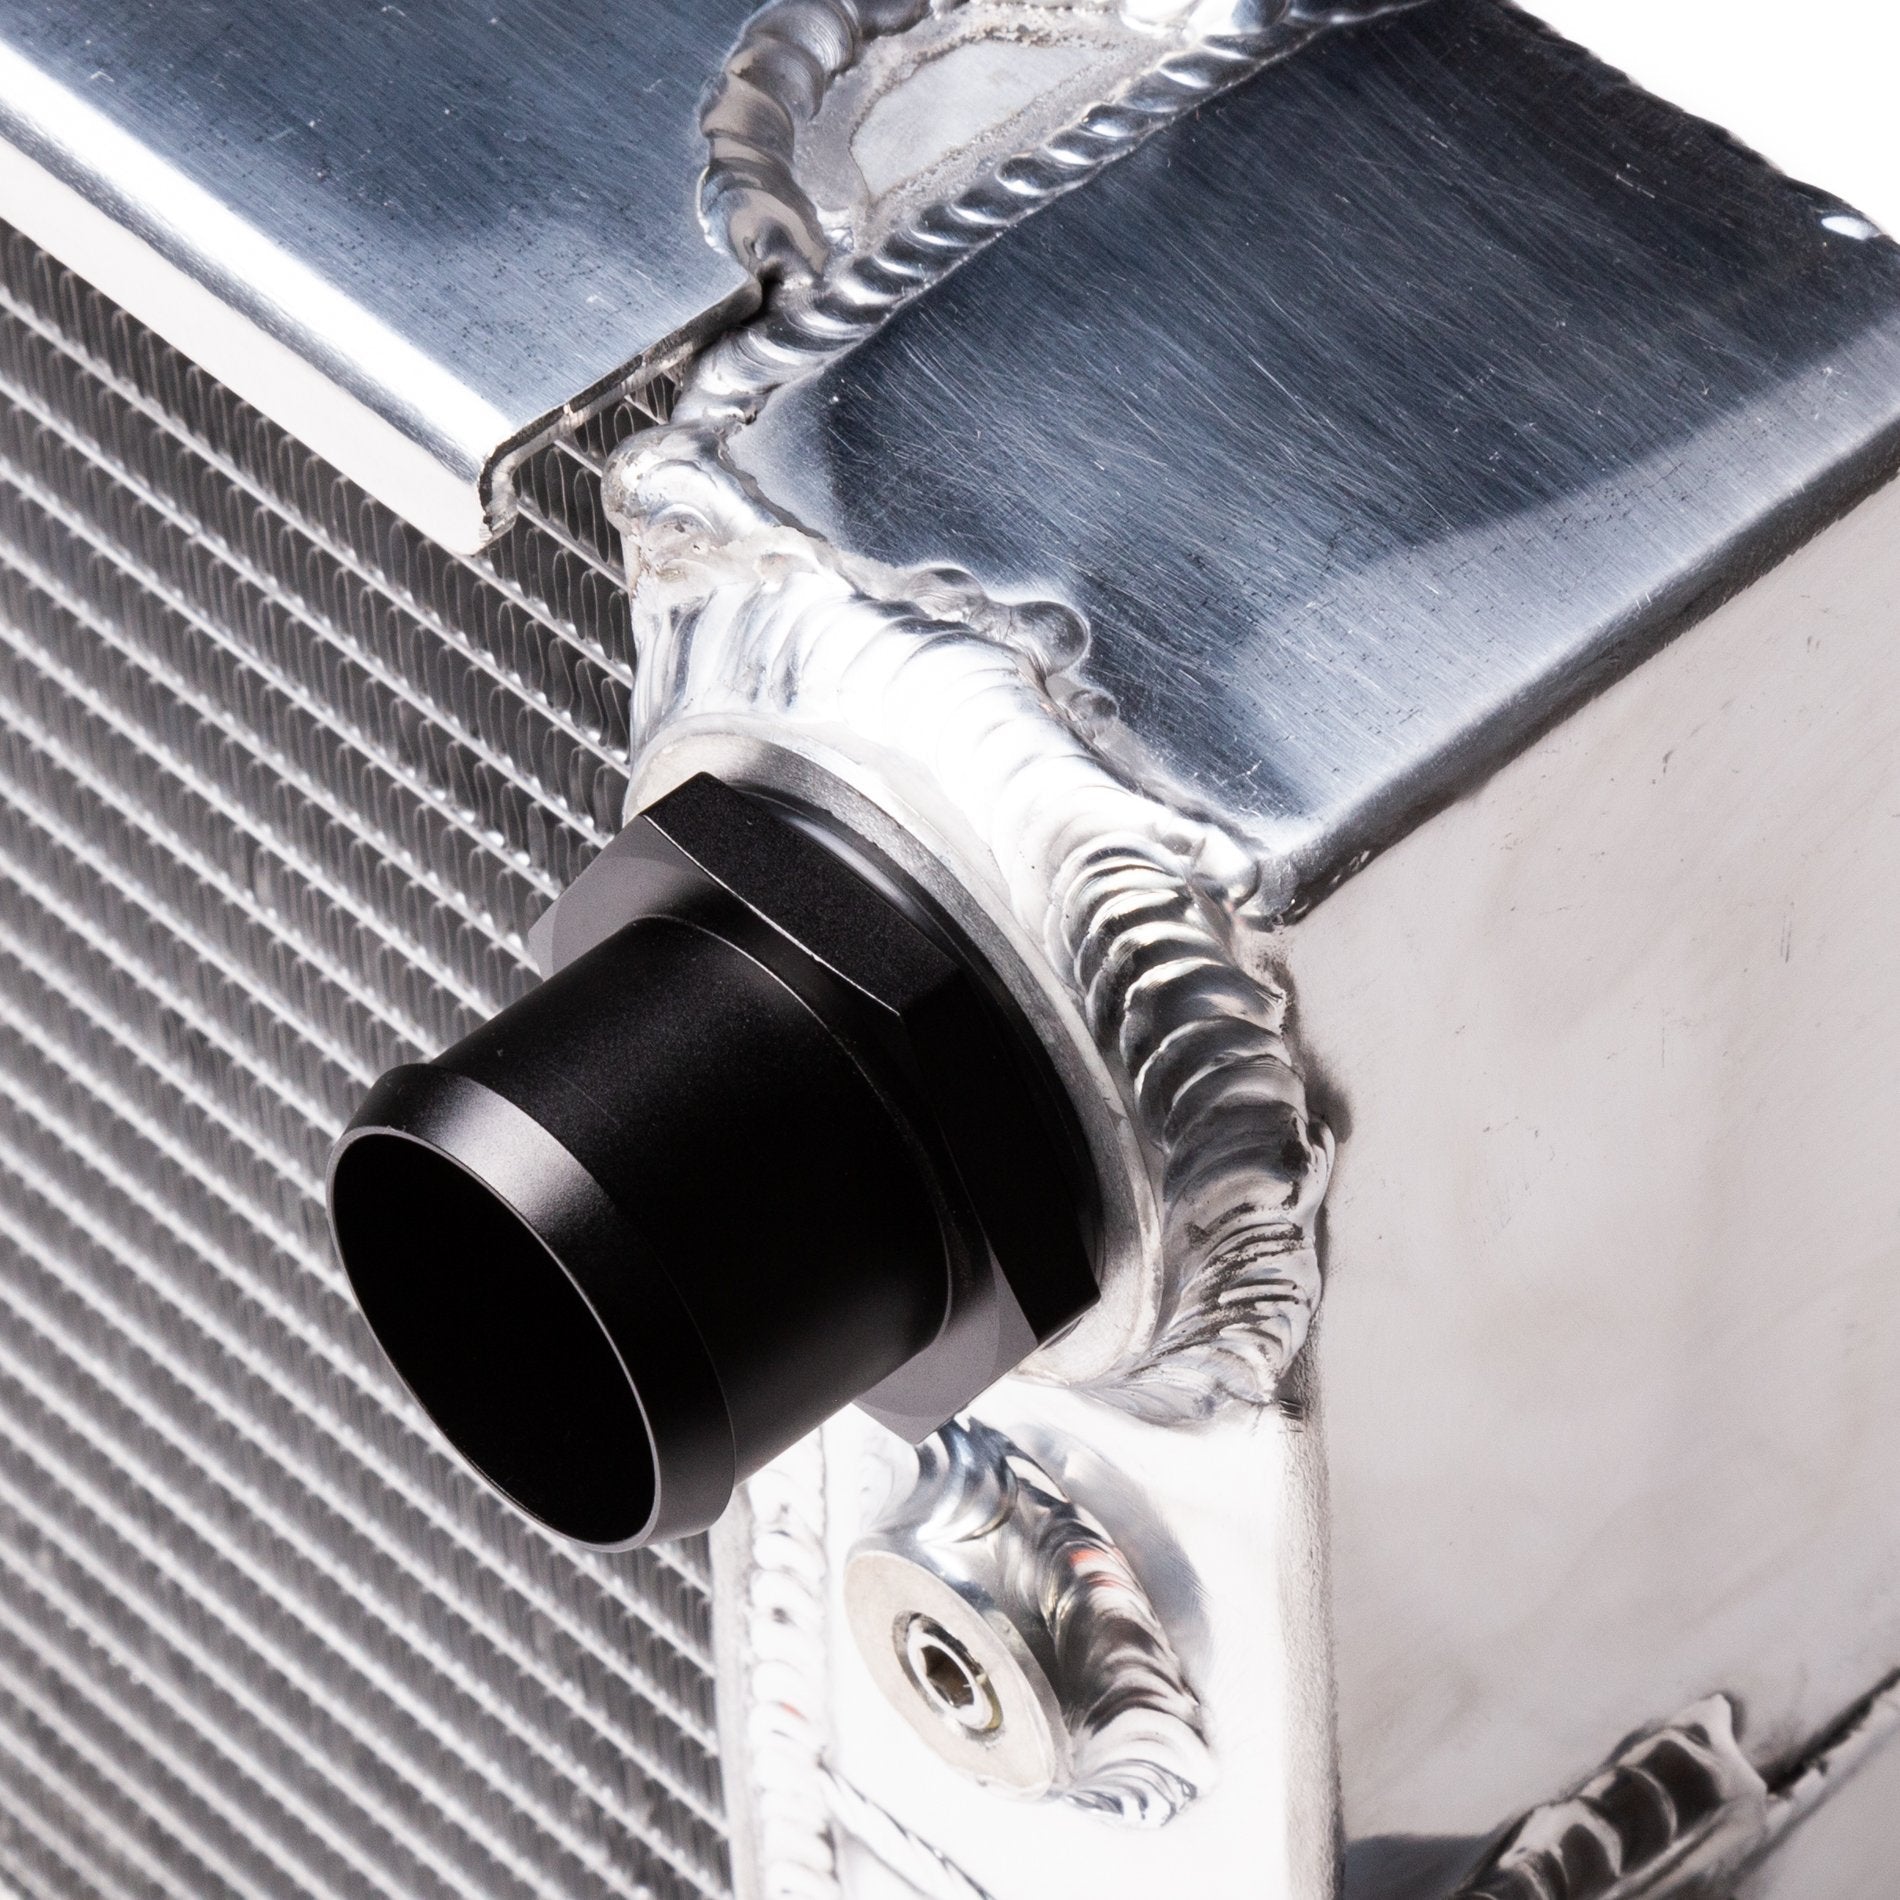 CHASE BAYS Honda Integra Aluminum Water Cooler - PARTS33 GmbH